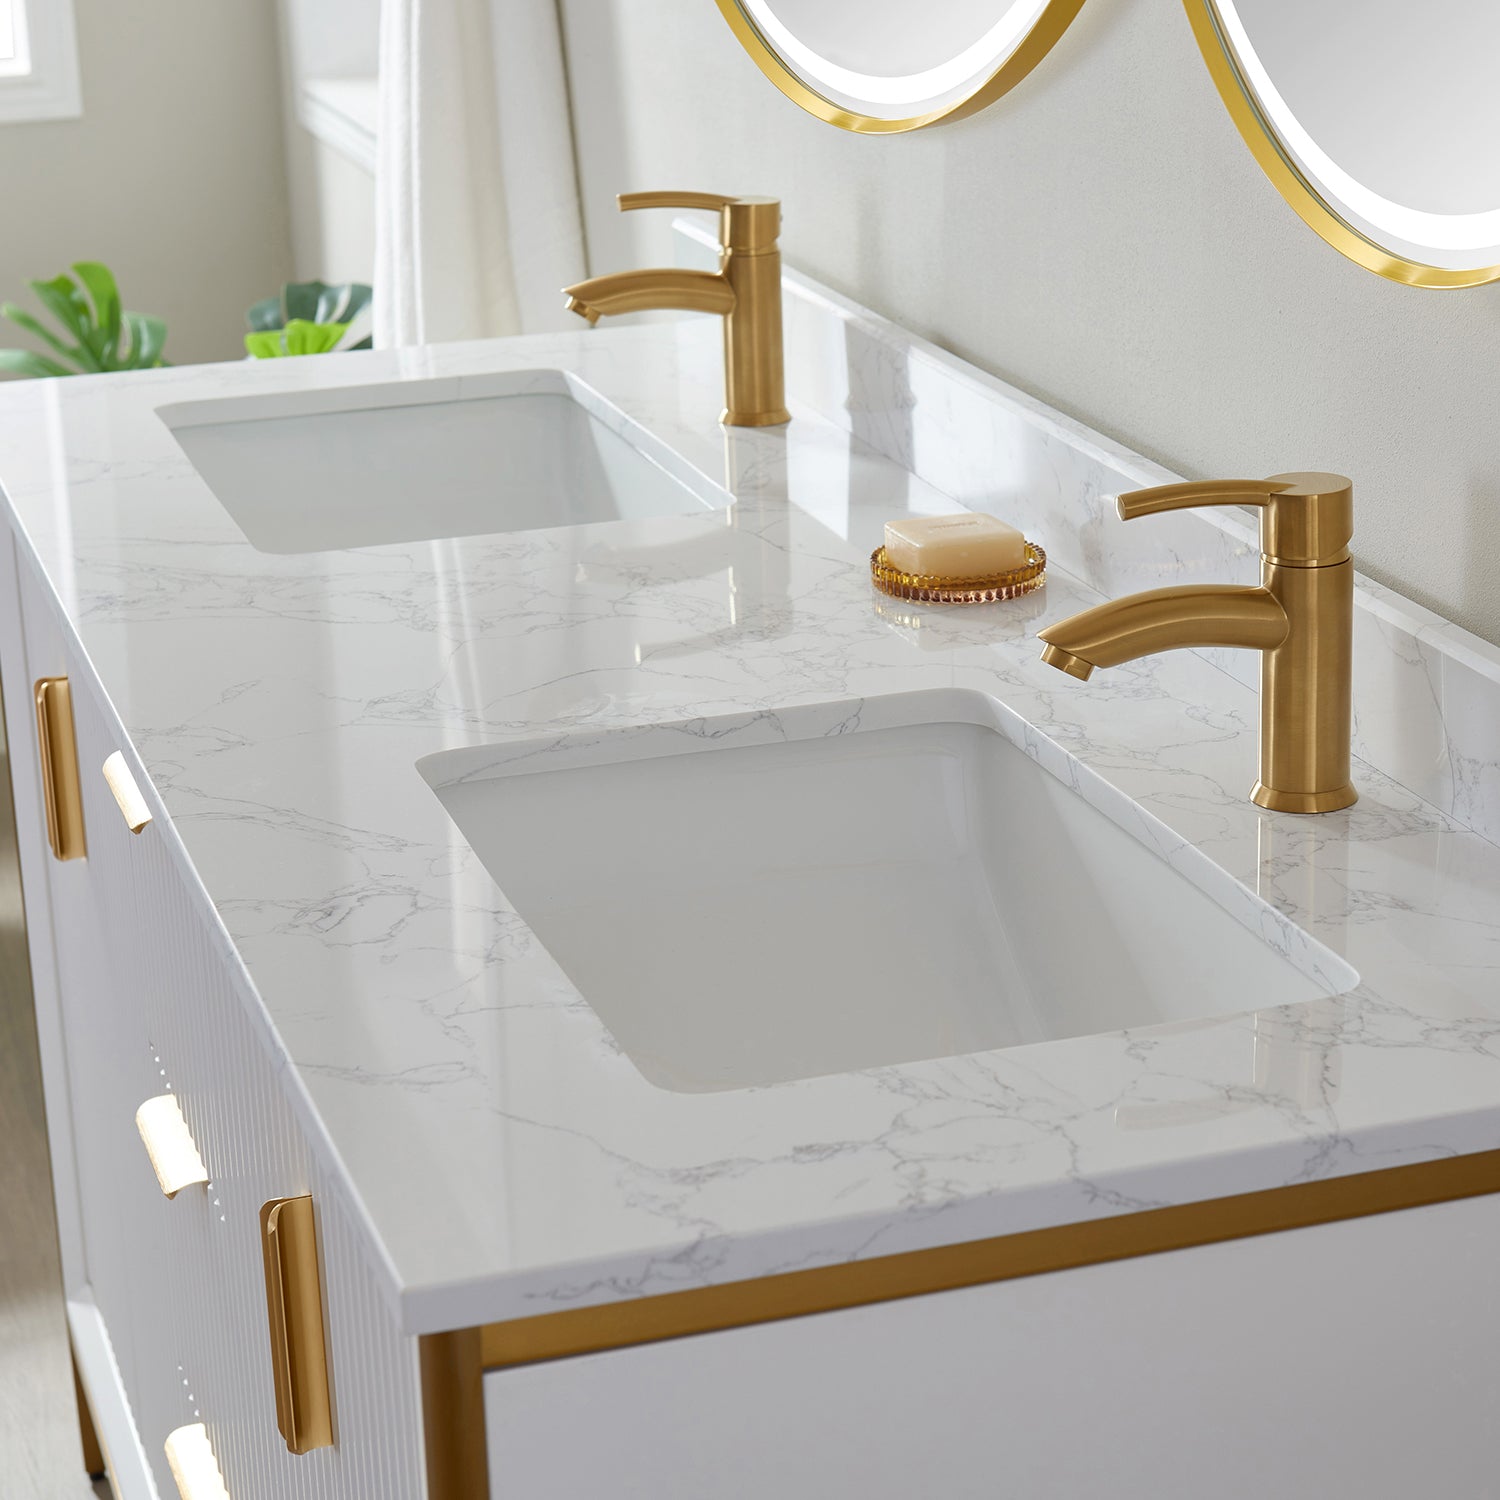 Granada 60" Double Vanity in White with White Composite Grain Stone Countertop